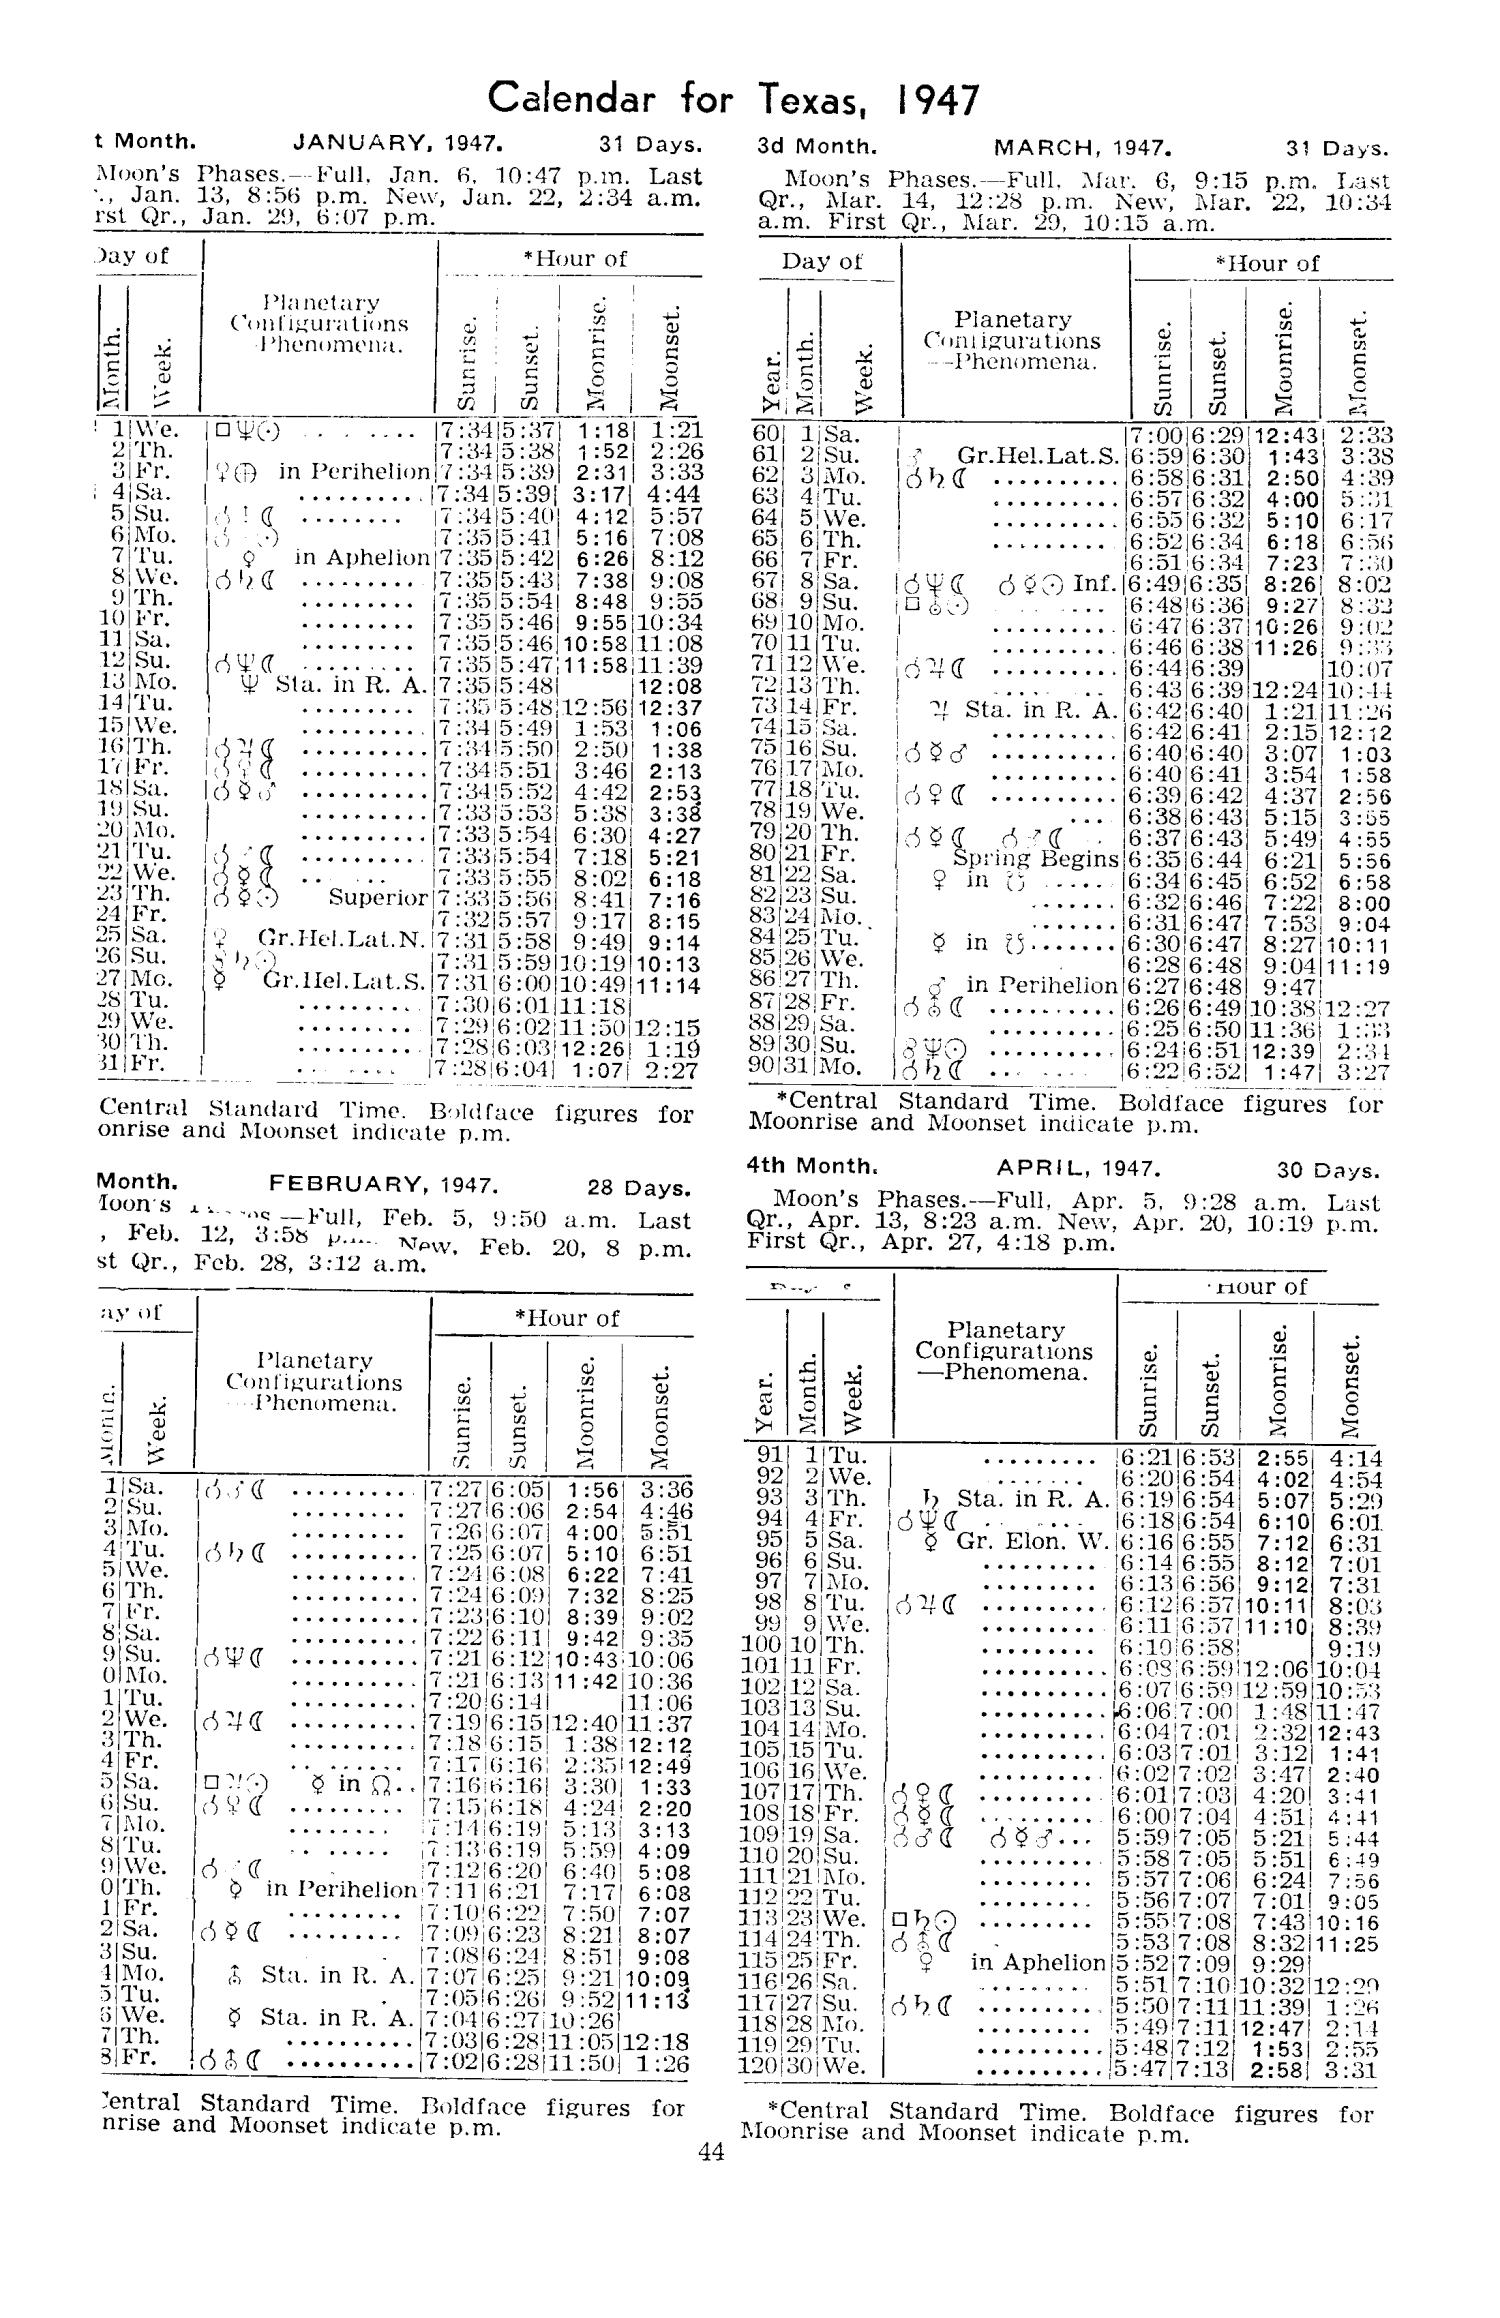 Texas Almanac, 1947-1948
                                                
                                                    44
                                                